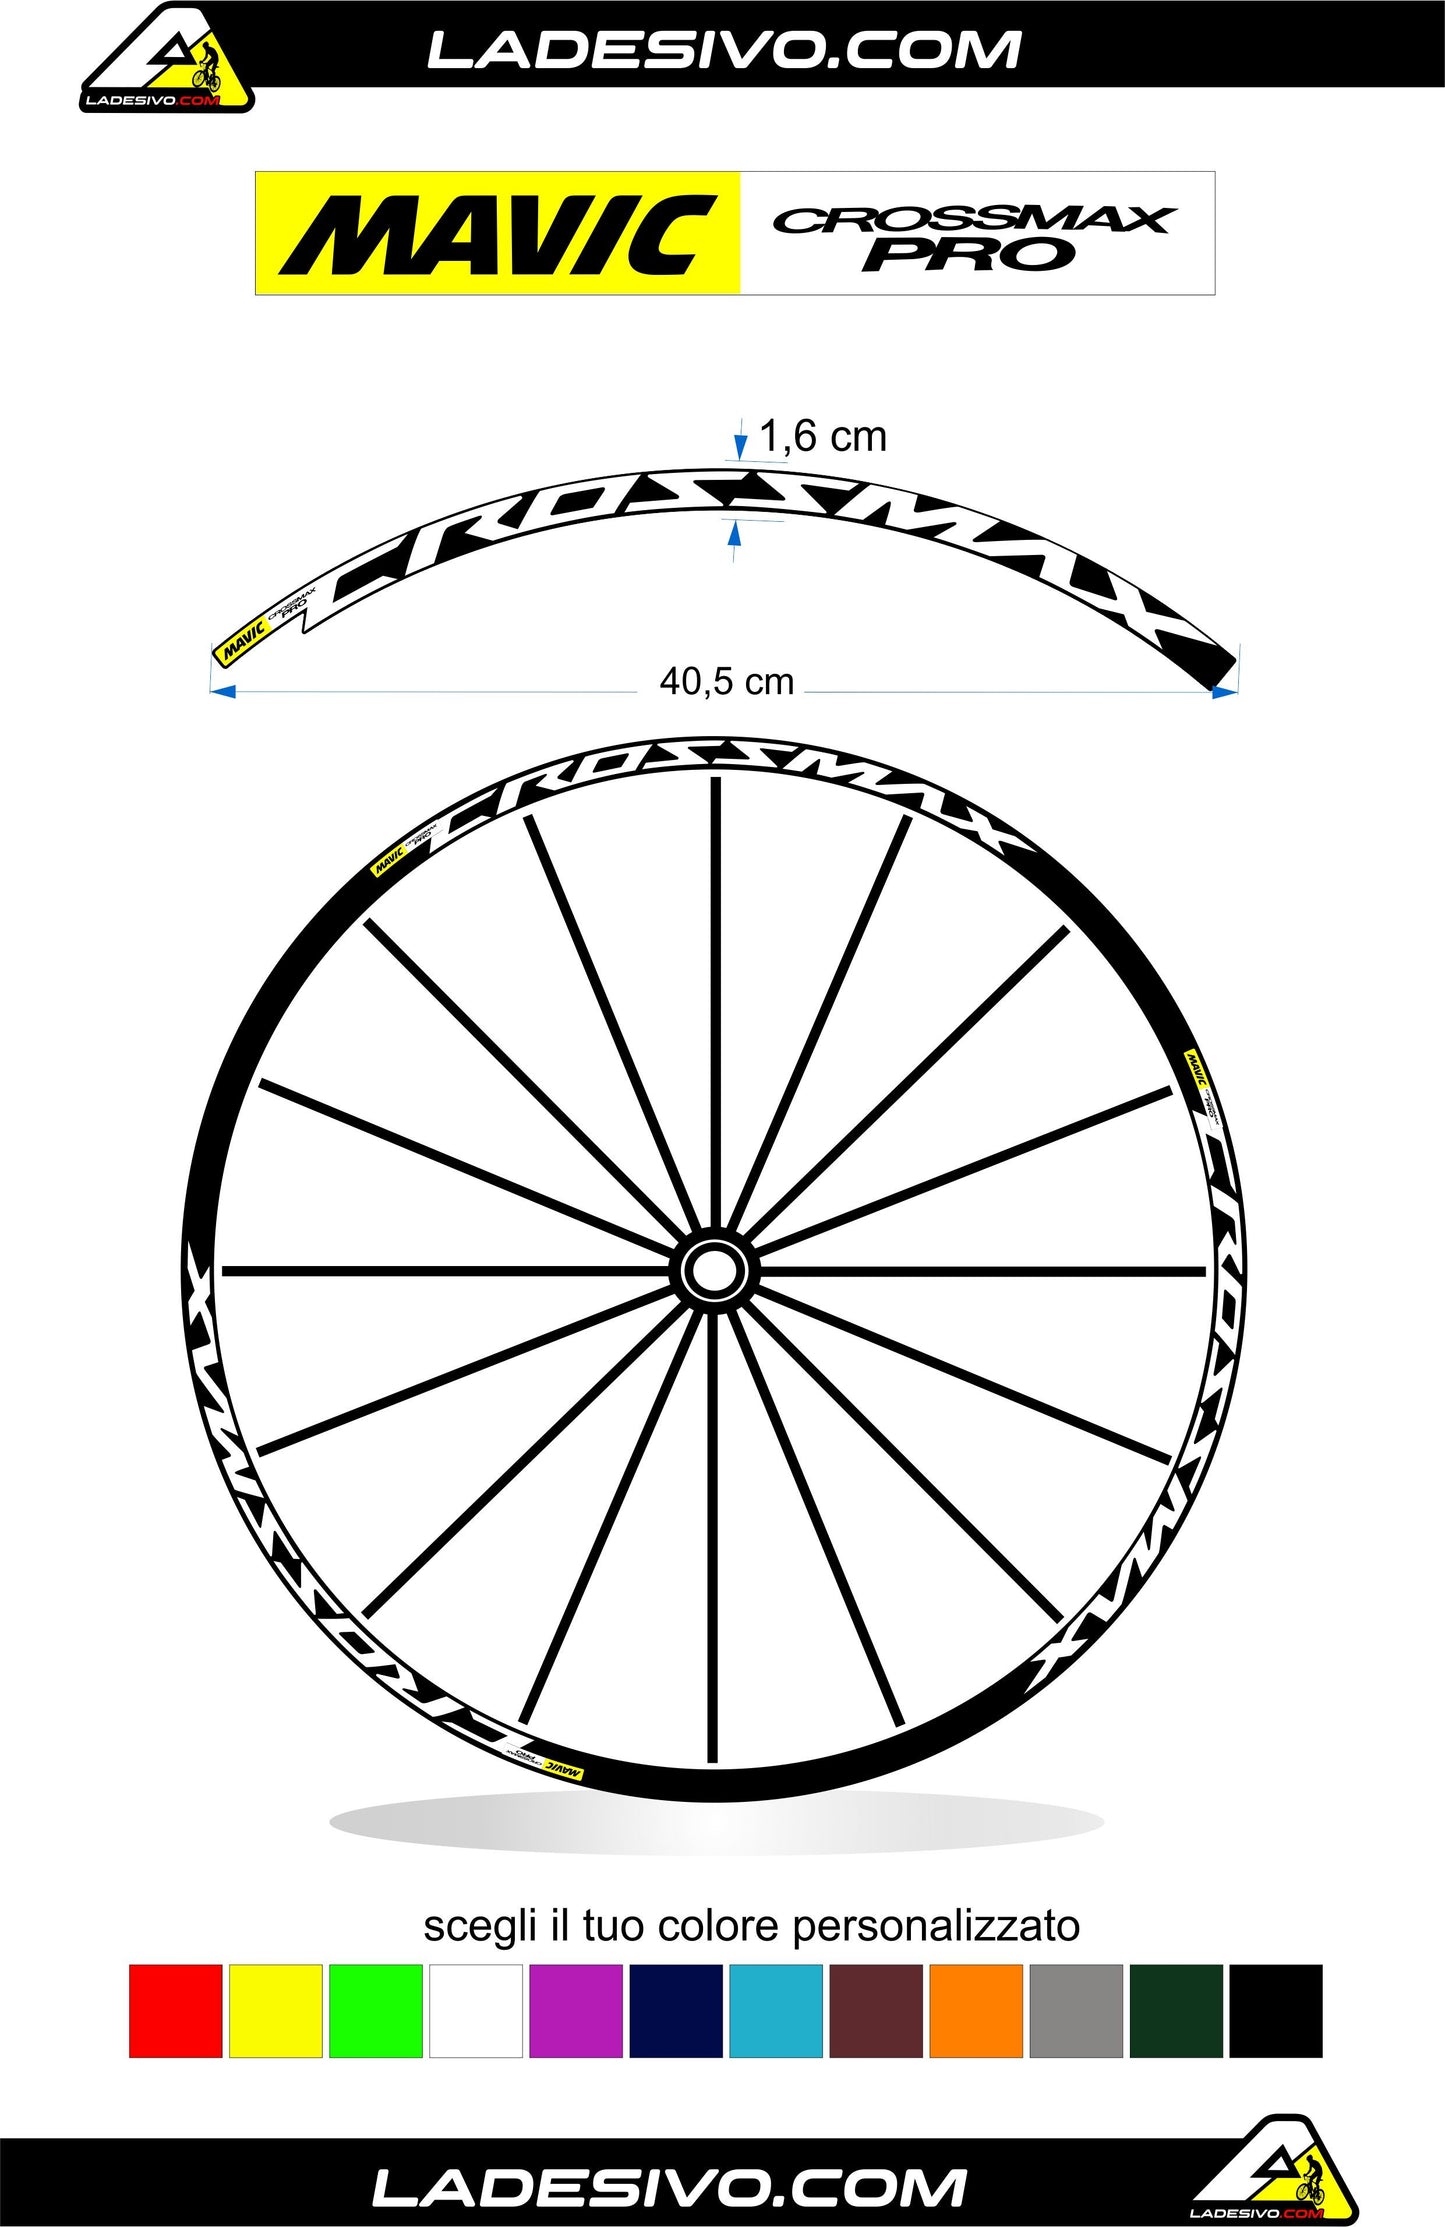 kit adesivi cerchi bici mtb mavic CROSSMAX pro anno 2016/2017 colore personalizzato antigraffio